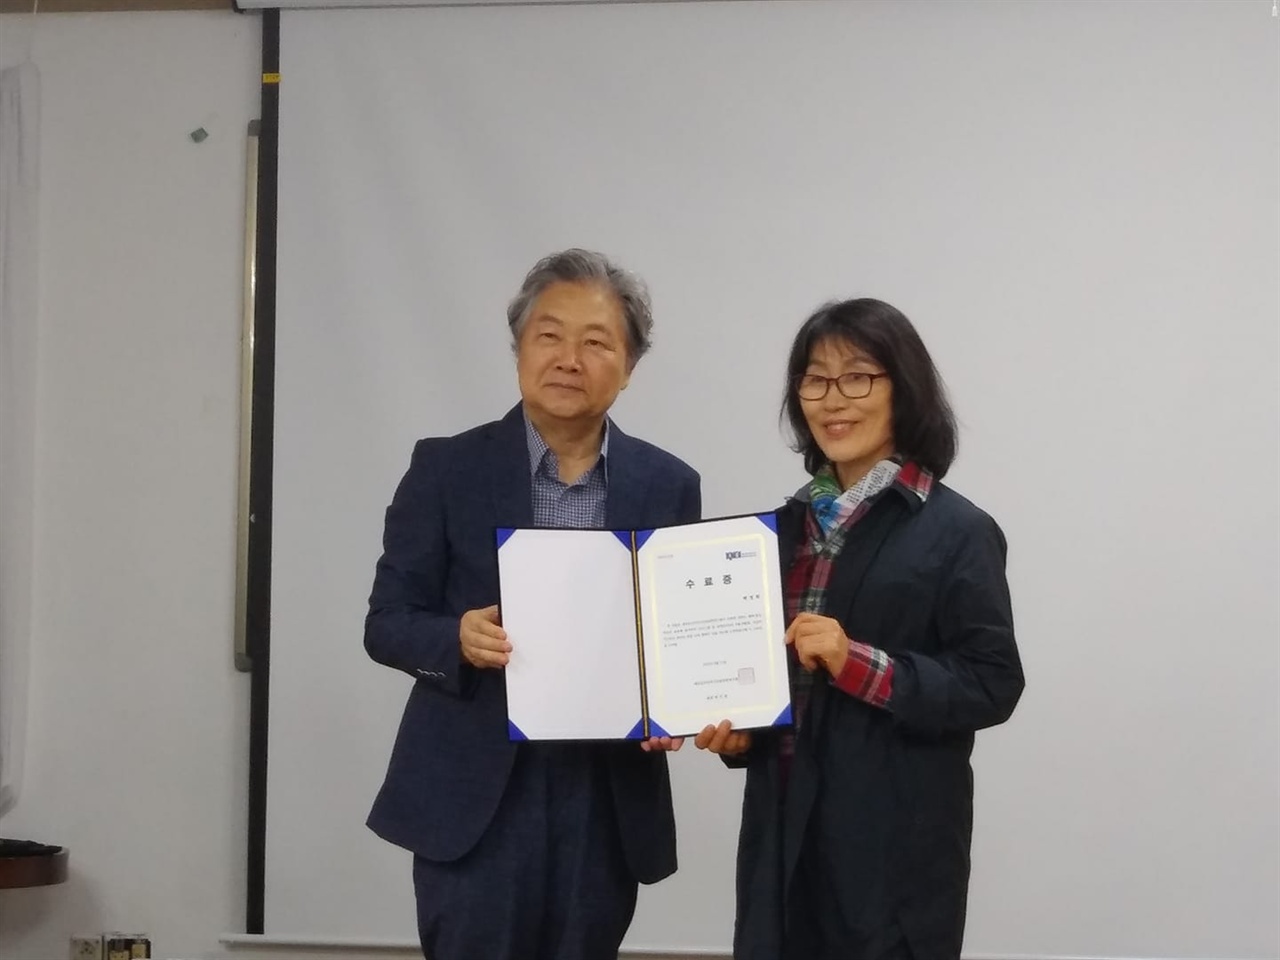  소설가 백정희씨가 평화통일학교 수료증을 받고 있다.